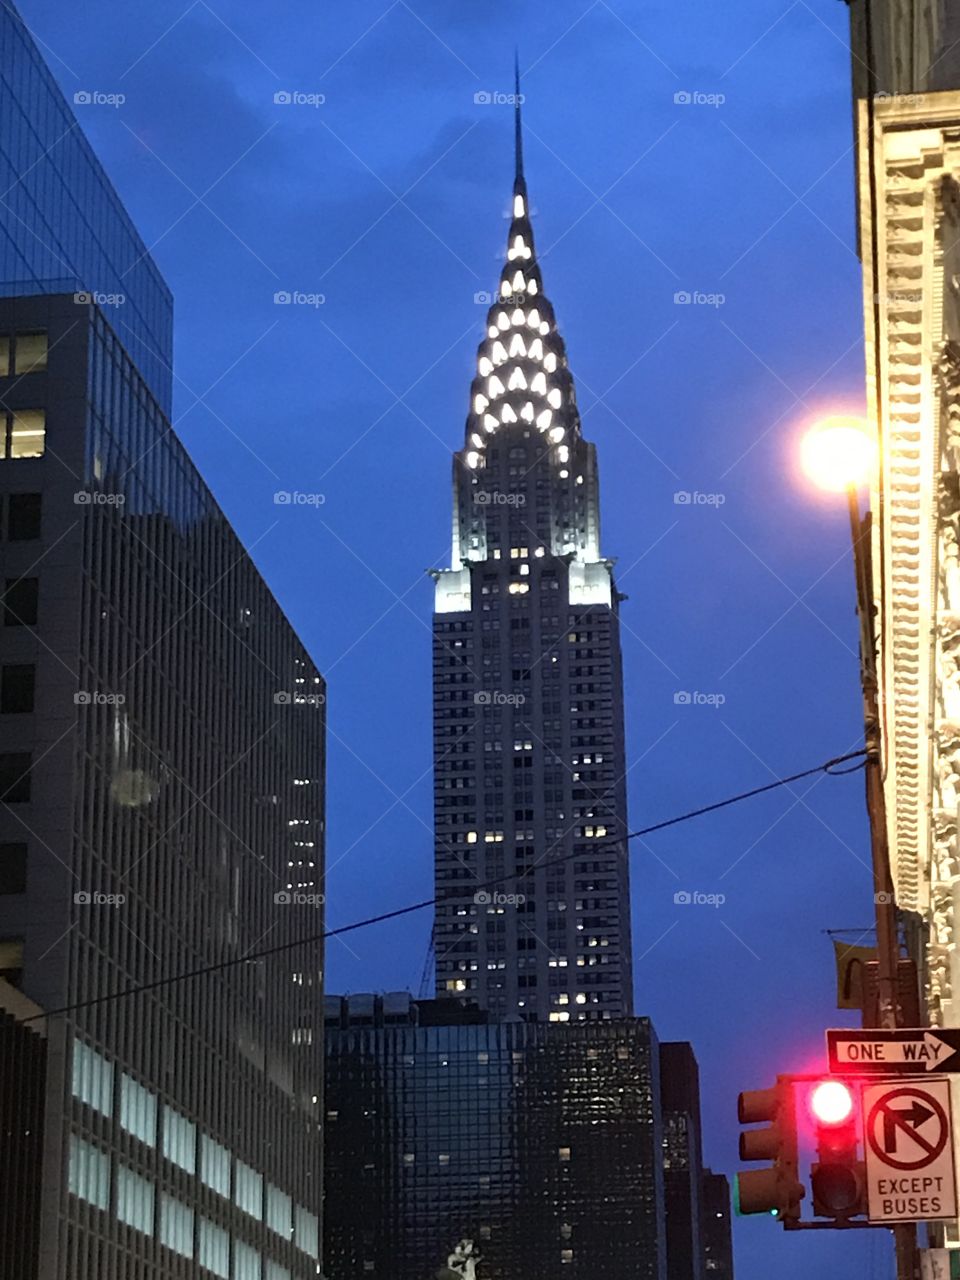 Chrysler Building in New York at dusk.